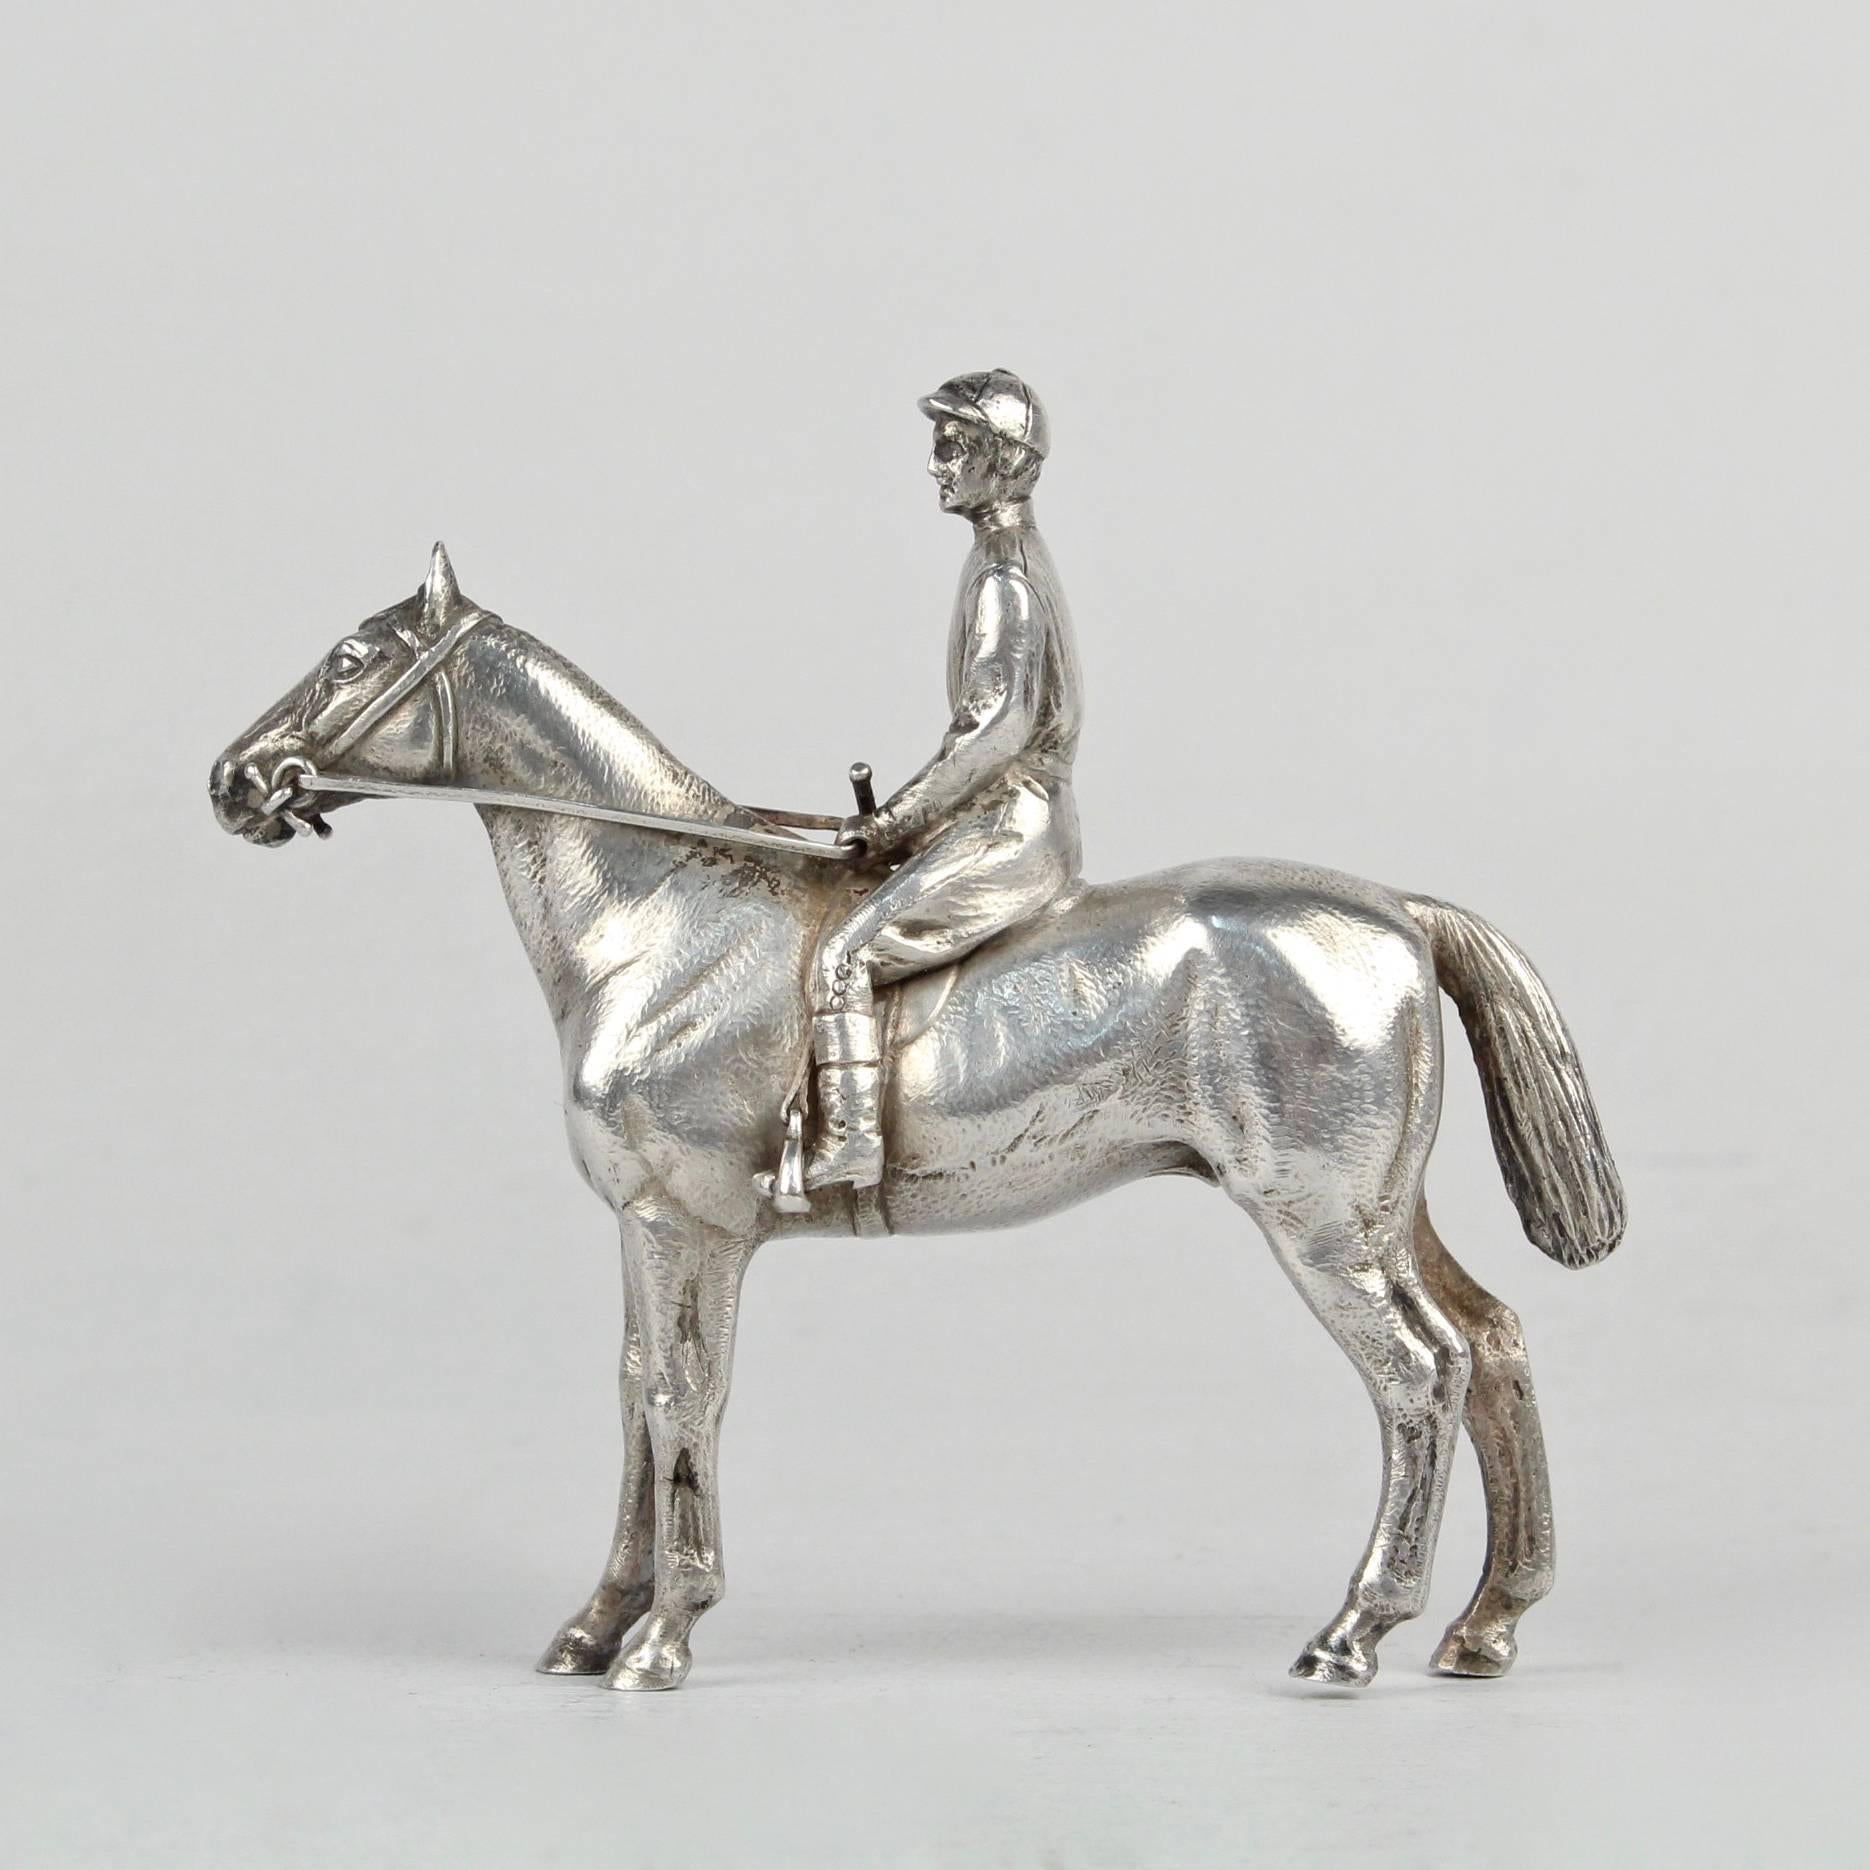 Ein sehr fein gegossenes Silber Pferd und Jockey Skulptur. 

Das Pferd und der Jockey sind in Ruhe abgebildet.

Die Skulptur ist nicht beschriftet. Wir glauben, dass der Feingehalt des Silbers Münze oder Sterling ist.

Einfach ein atemberaubendes